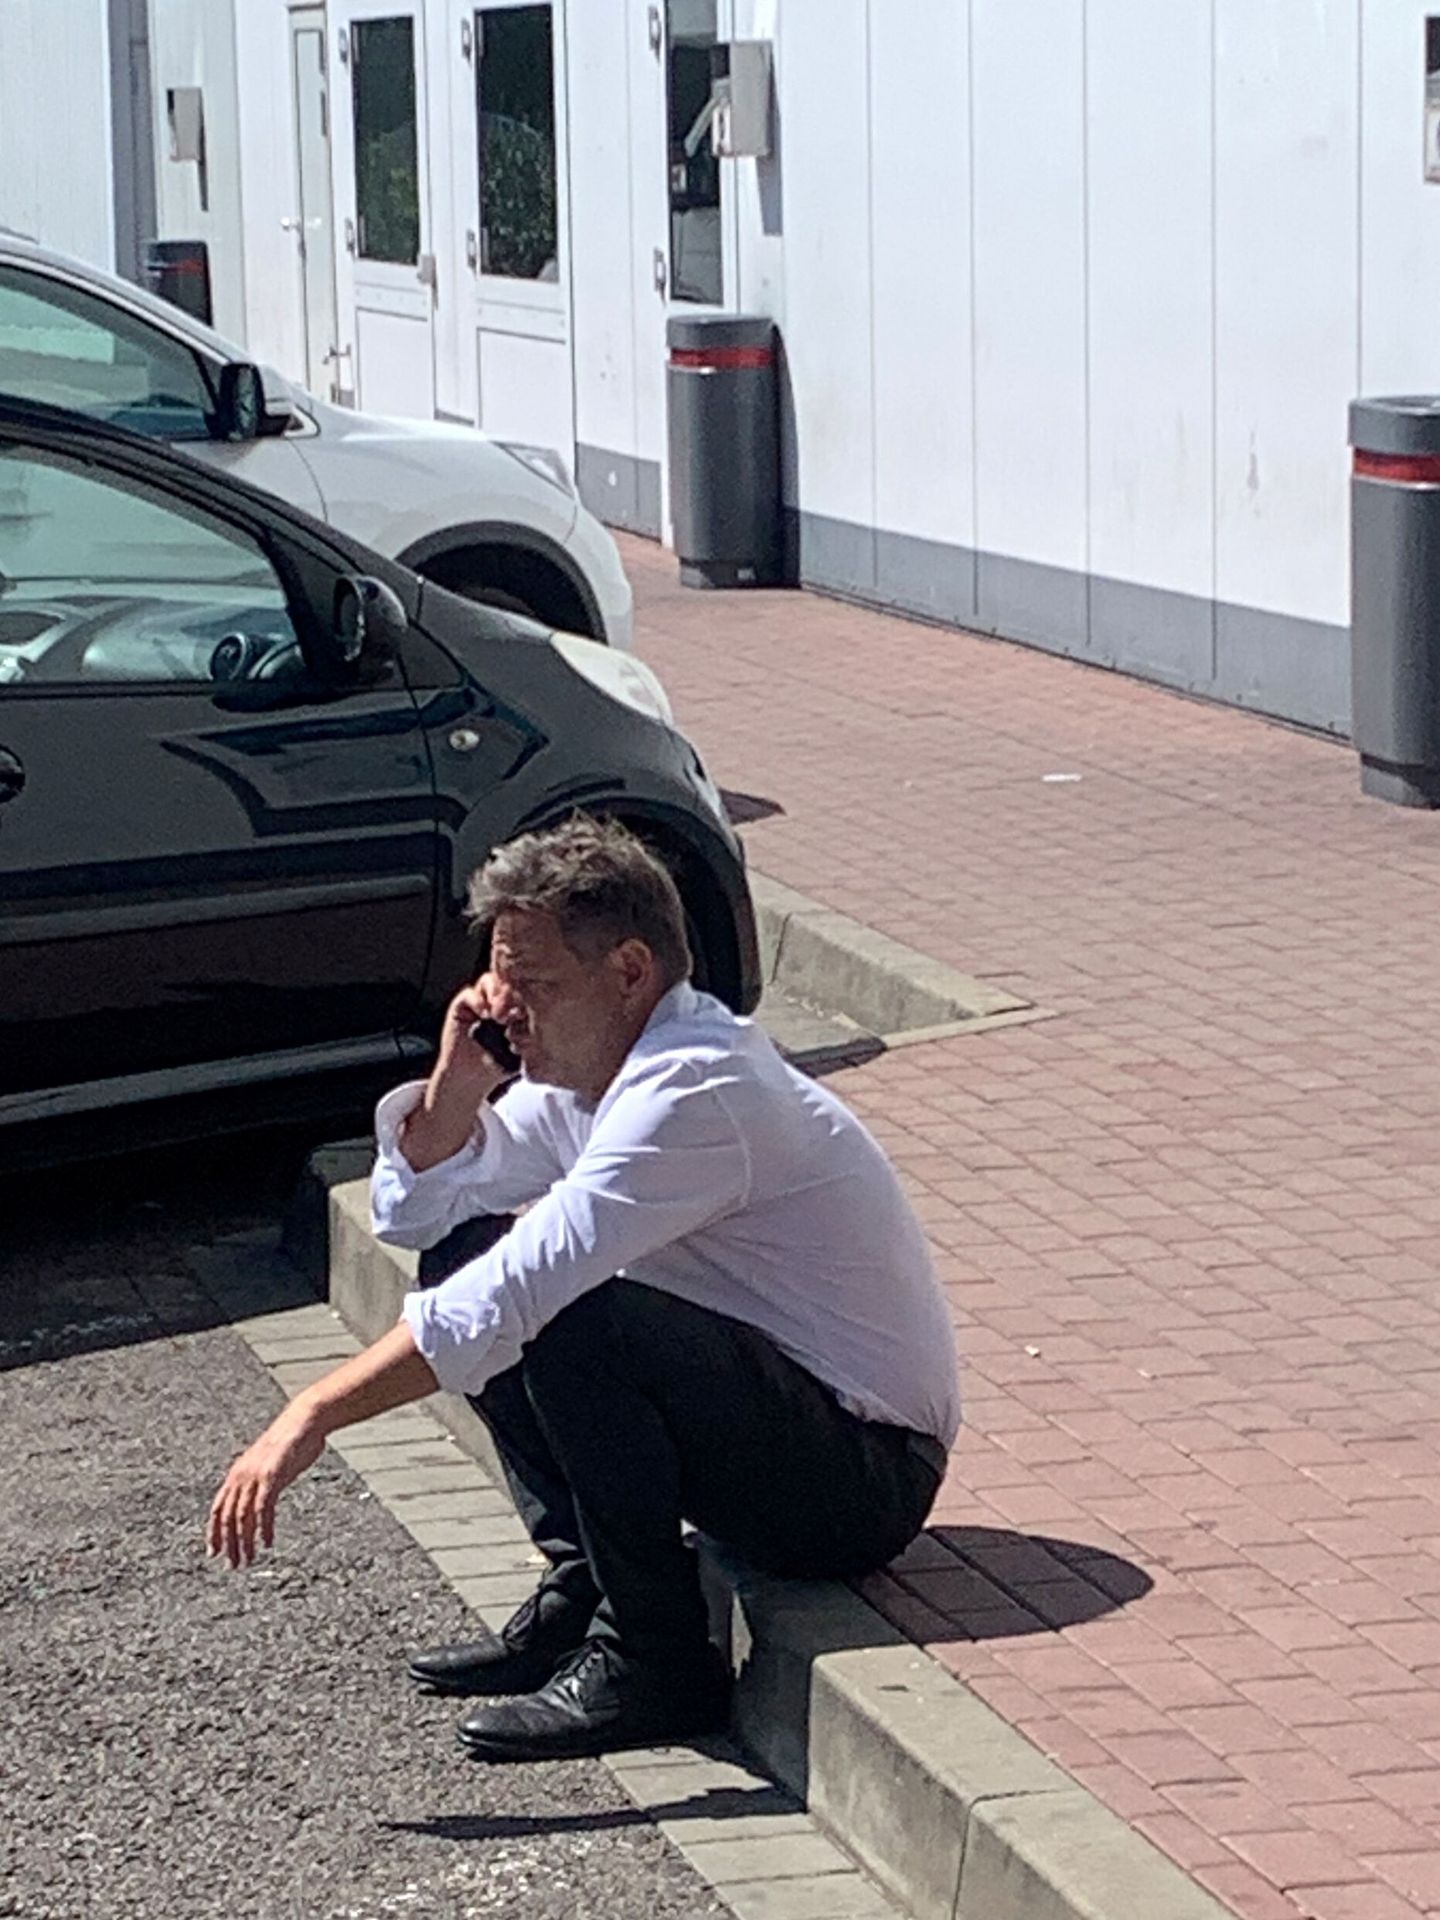 Robert Habeck hace una llamada mientras su coche reposta en una estación de servicio. (Reuters/Christian Kraemer)